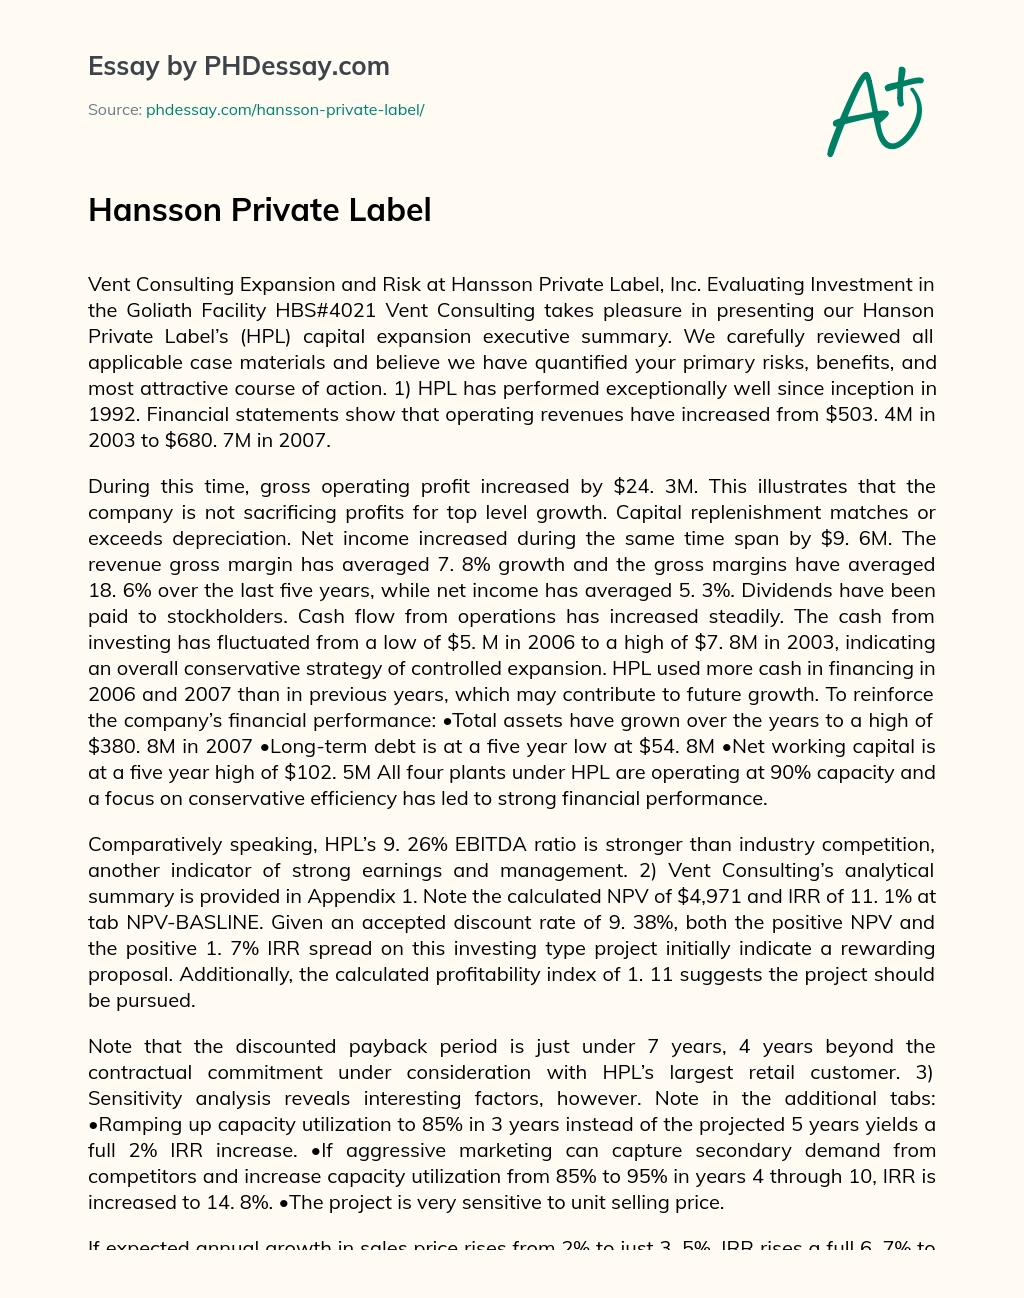 Hansson Private Label essay